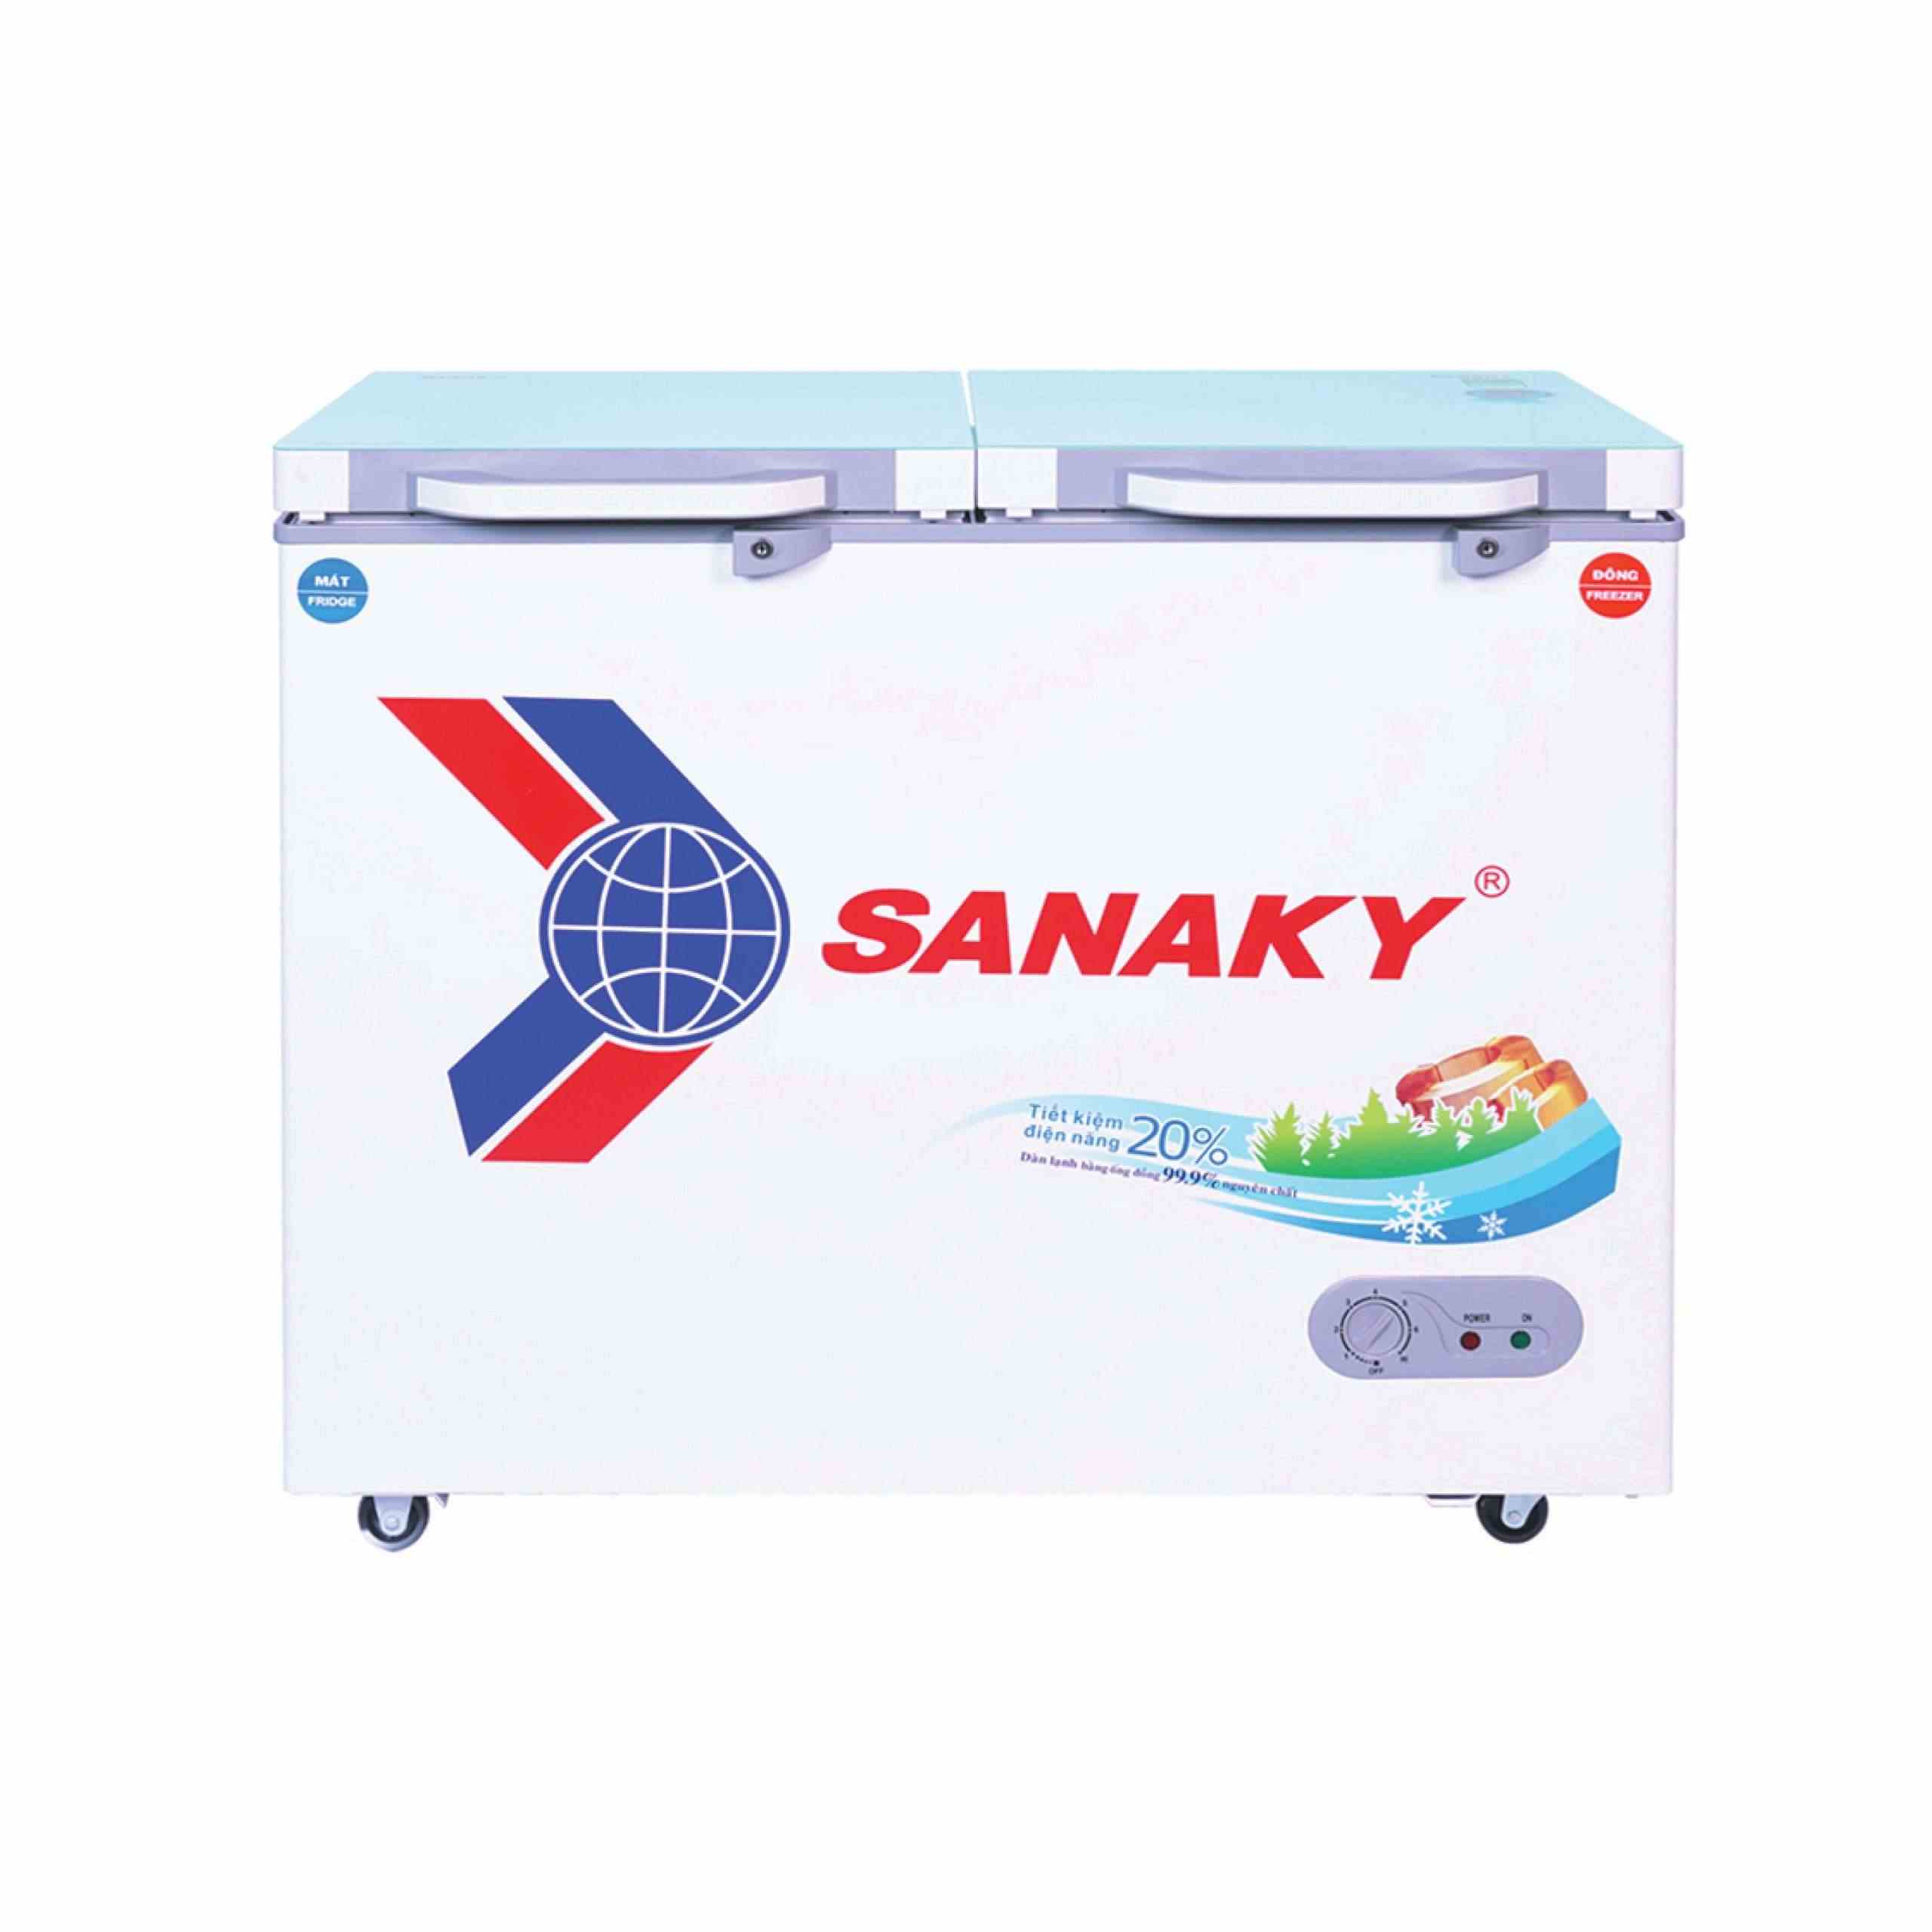 Tủ đông Sanaky 235 lít VH-2899W2KD 2 ngăn - Chính hãng